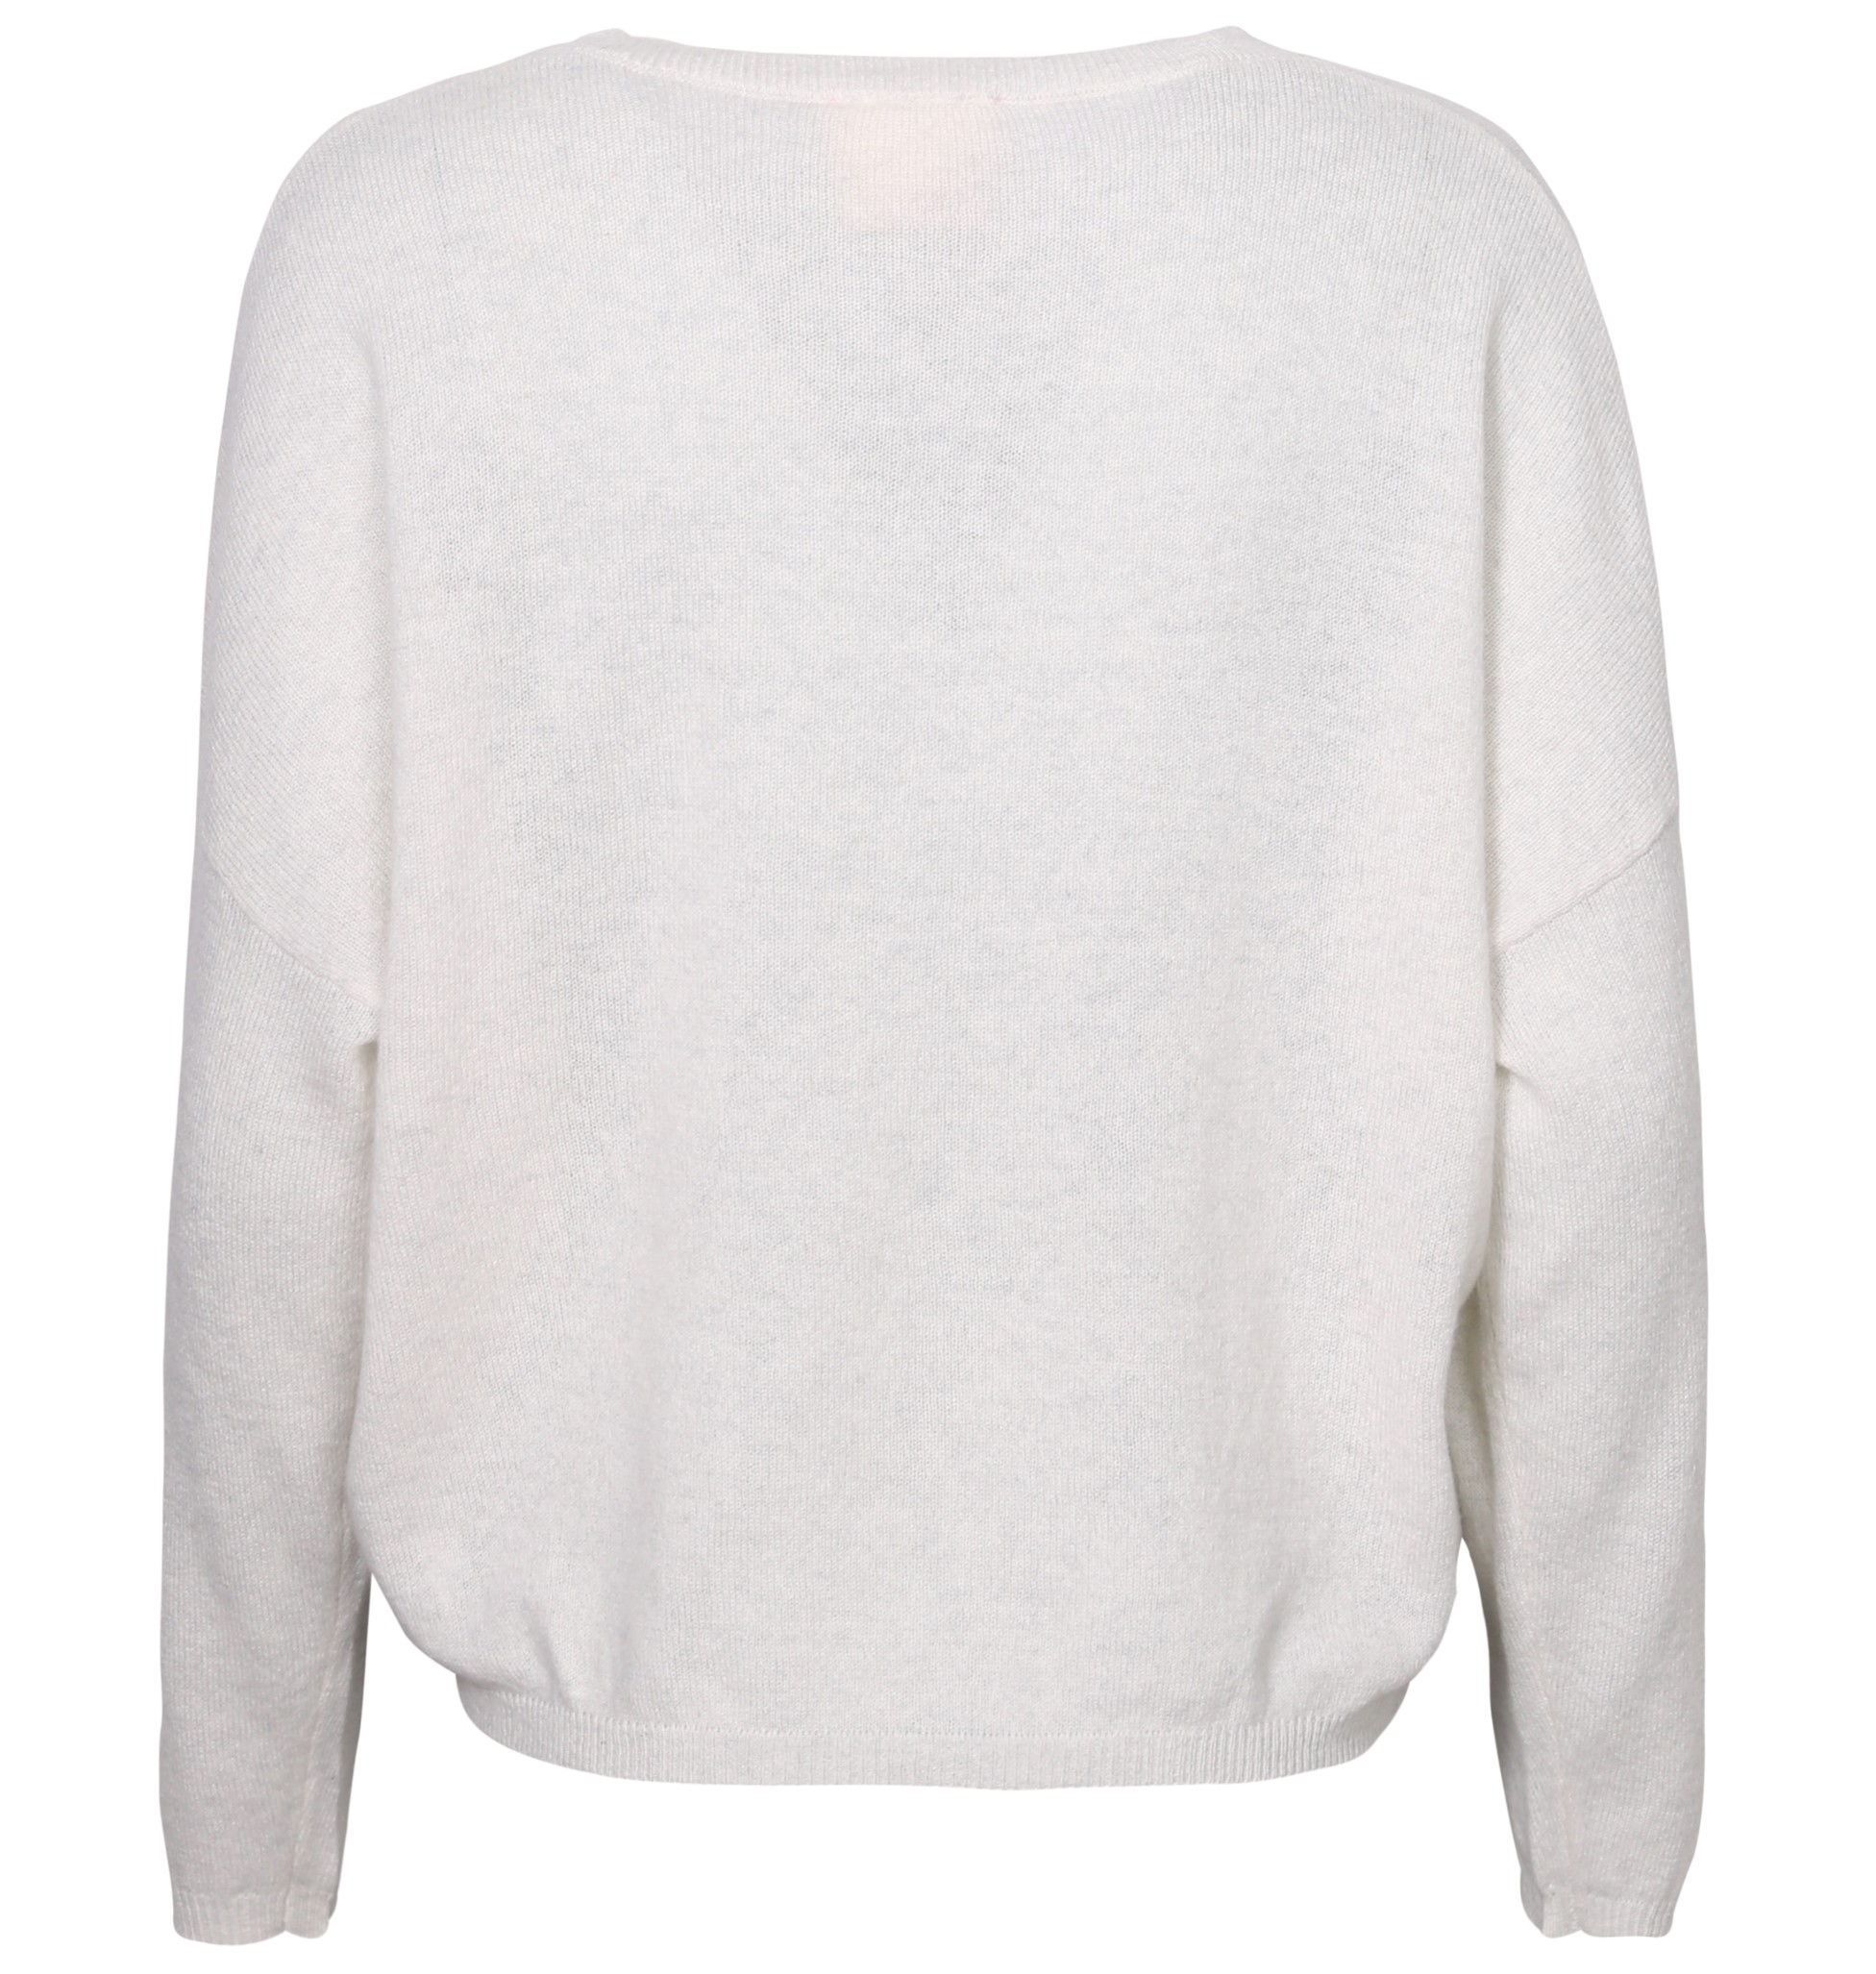 ABSOLUT CASHMERE V-Neck Sweater Alicia in Light Grey Melange L